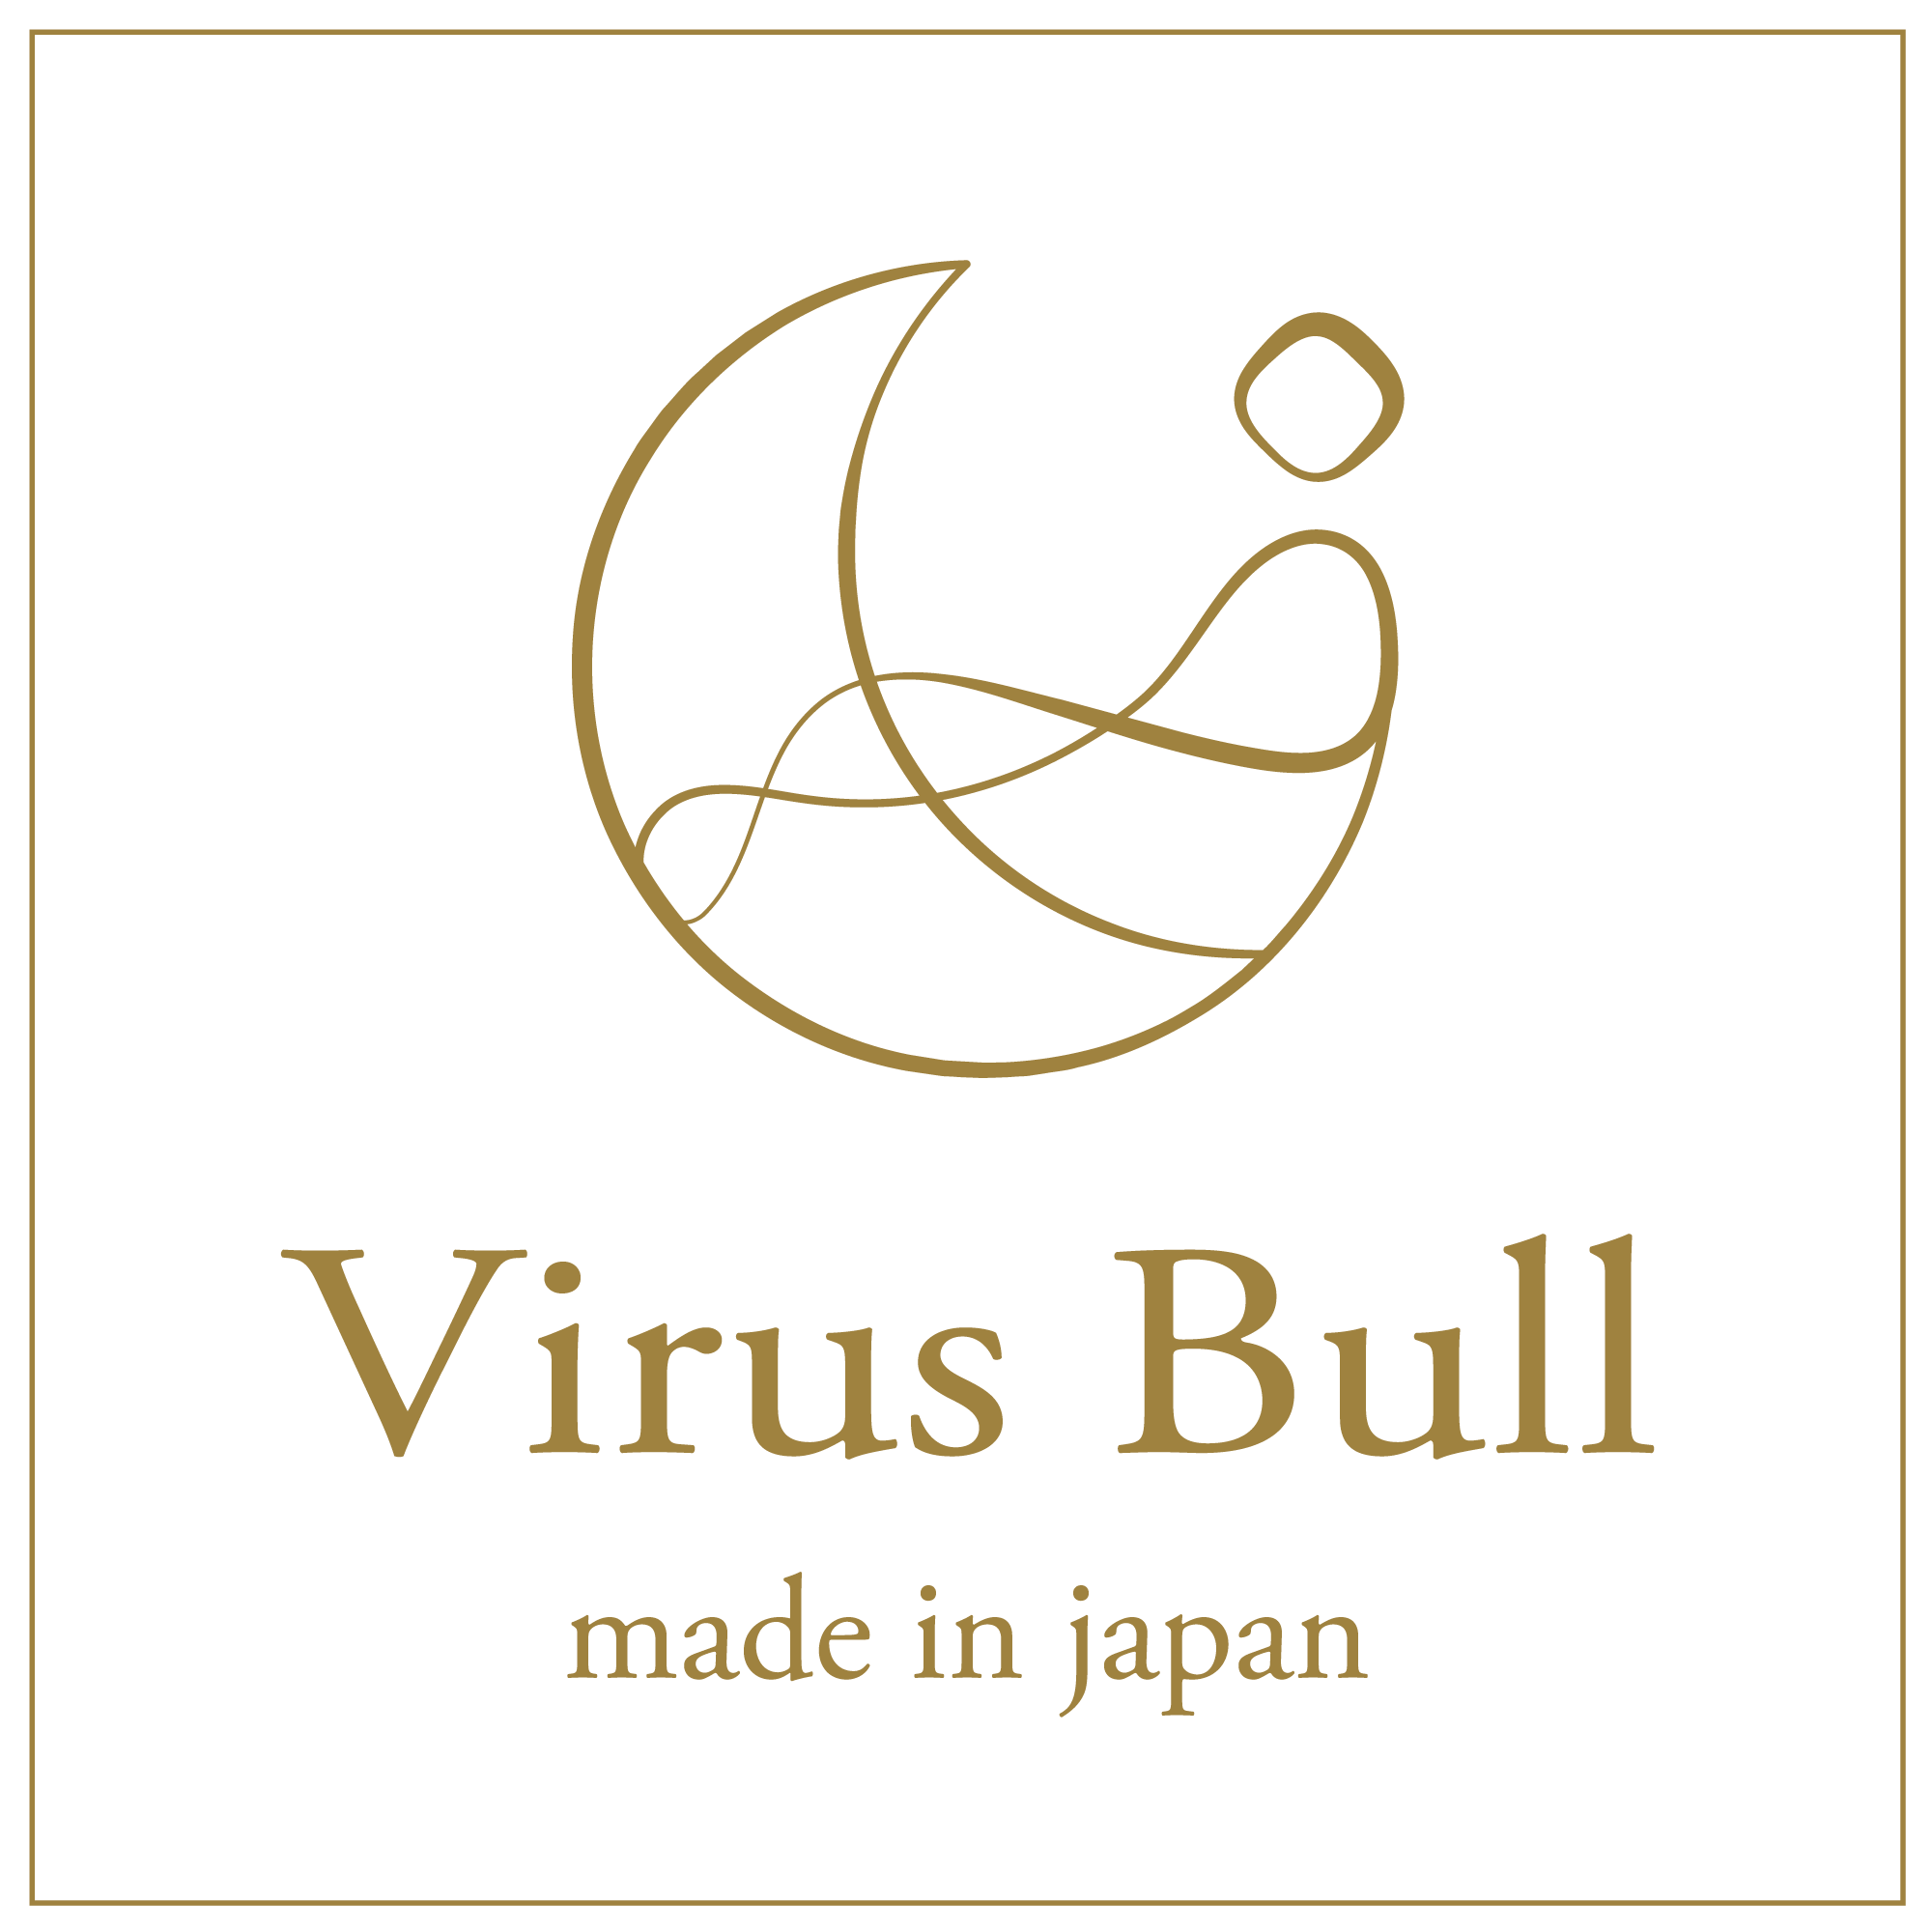 VirusBull